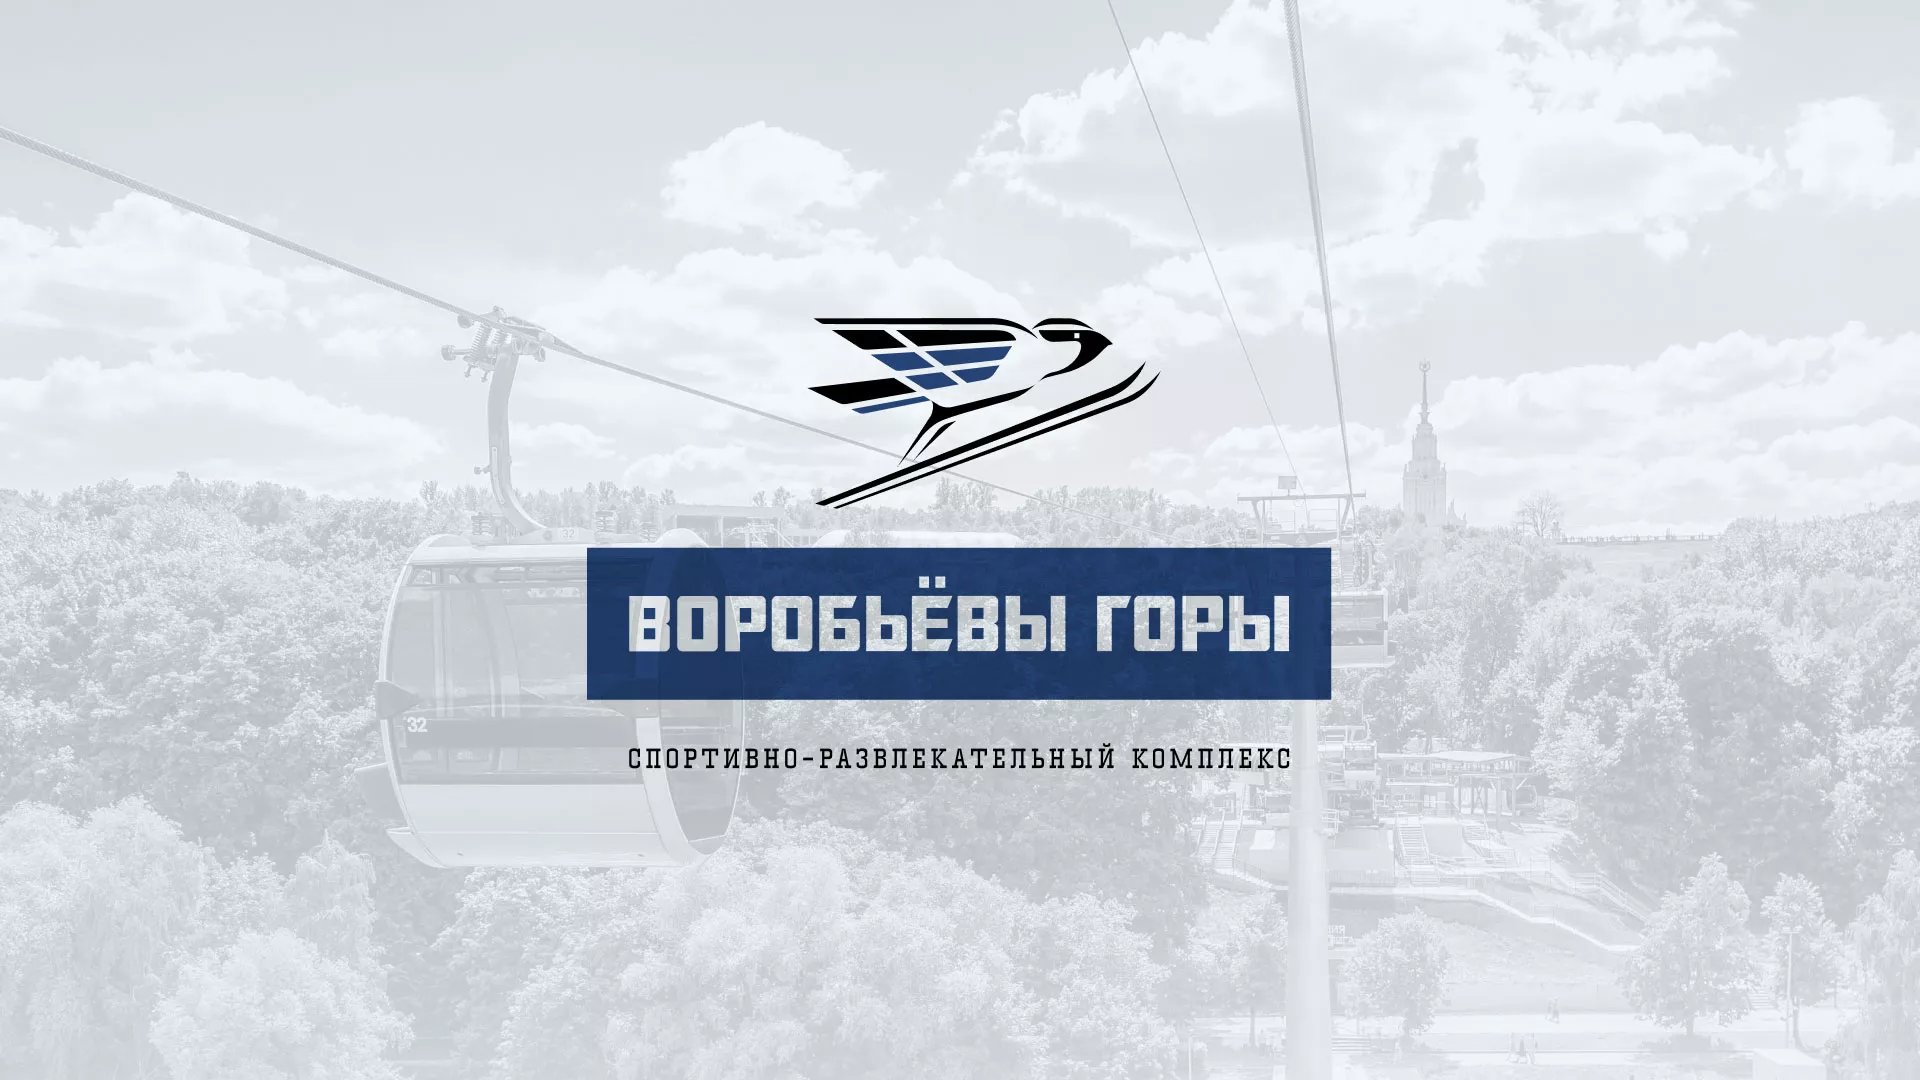 Разработка сайта в Донецке для спортивно-развлекательного комплекса «Воробьёвы горы»